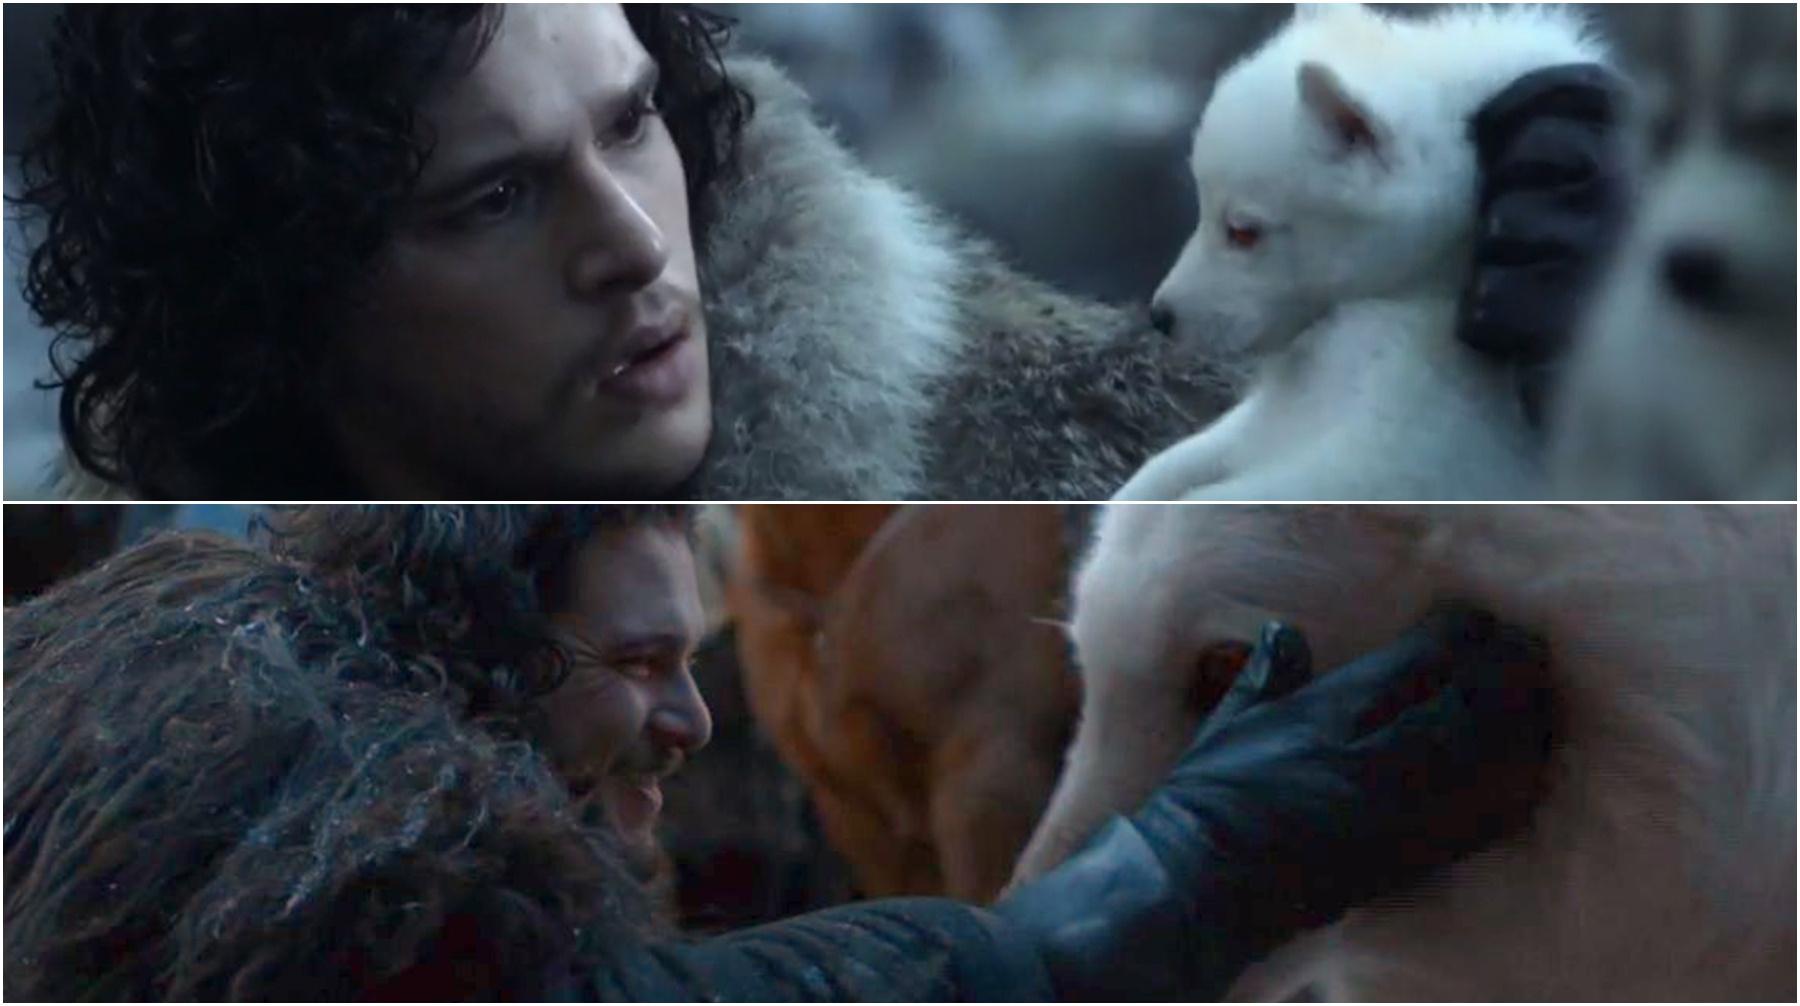 La primera y última aparición de los personajes de la serie "Game of Thrones". (Foto: HBO)